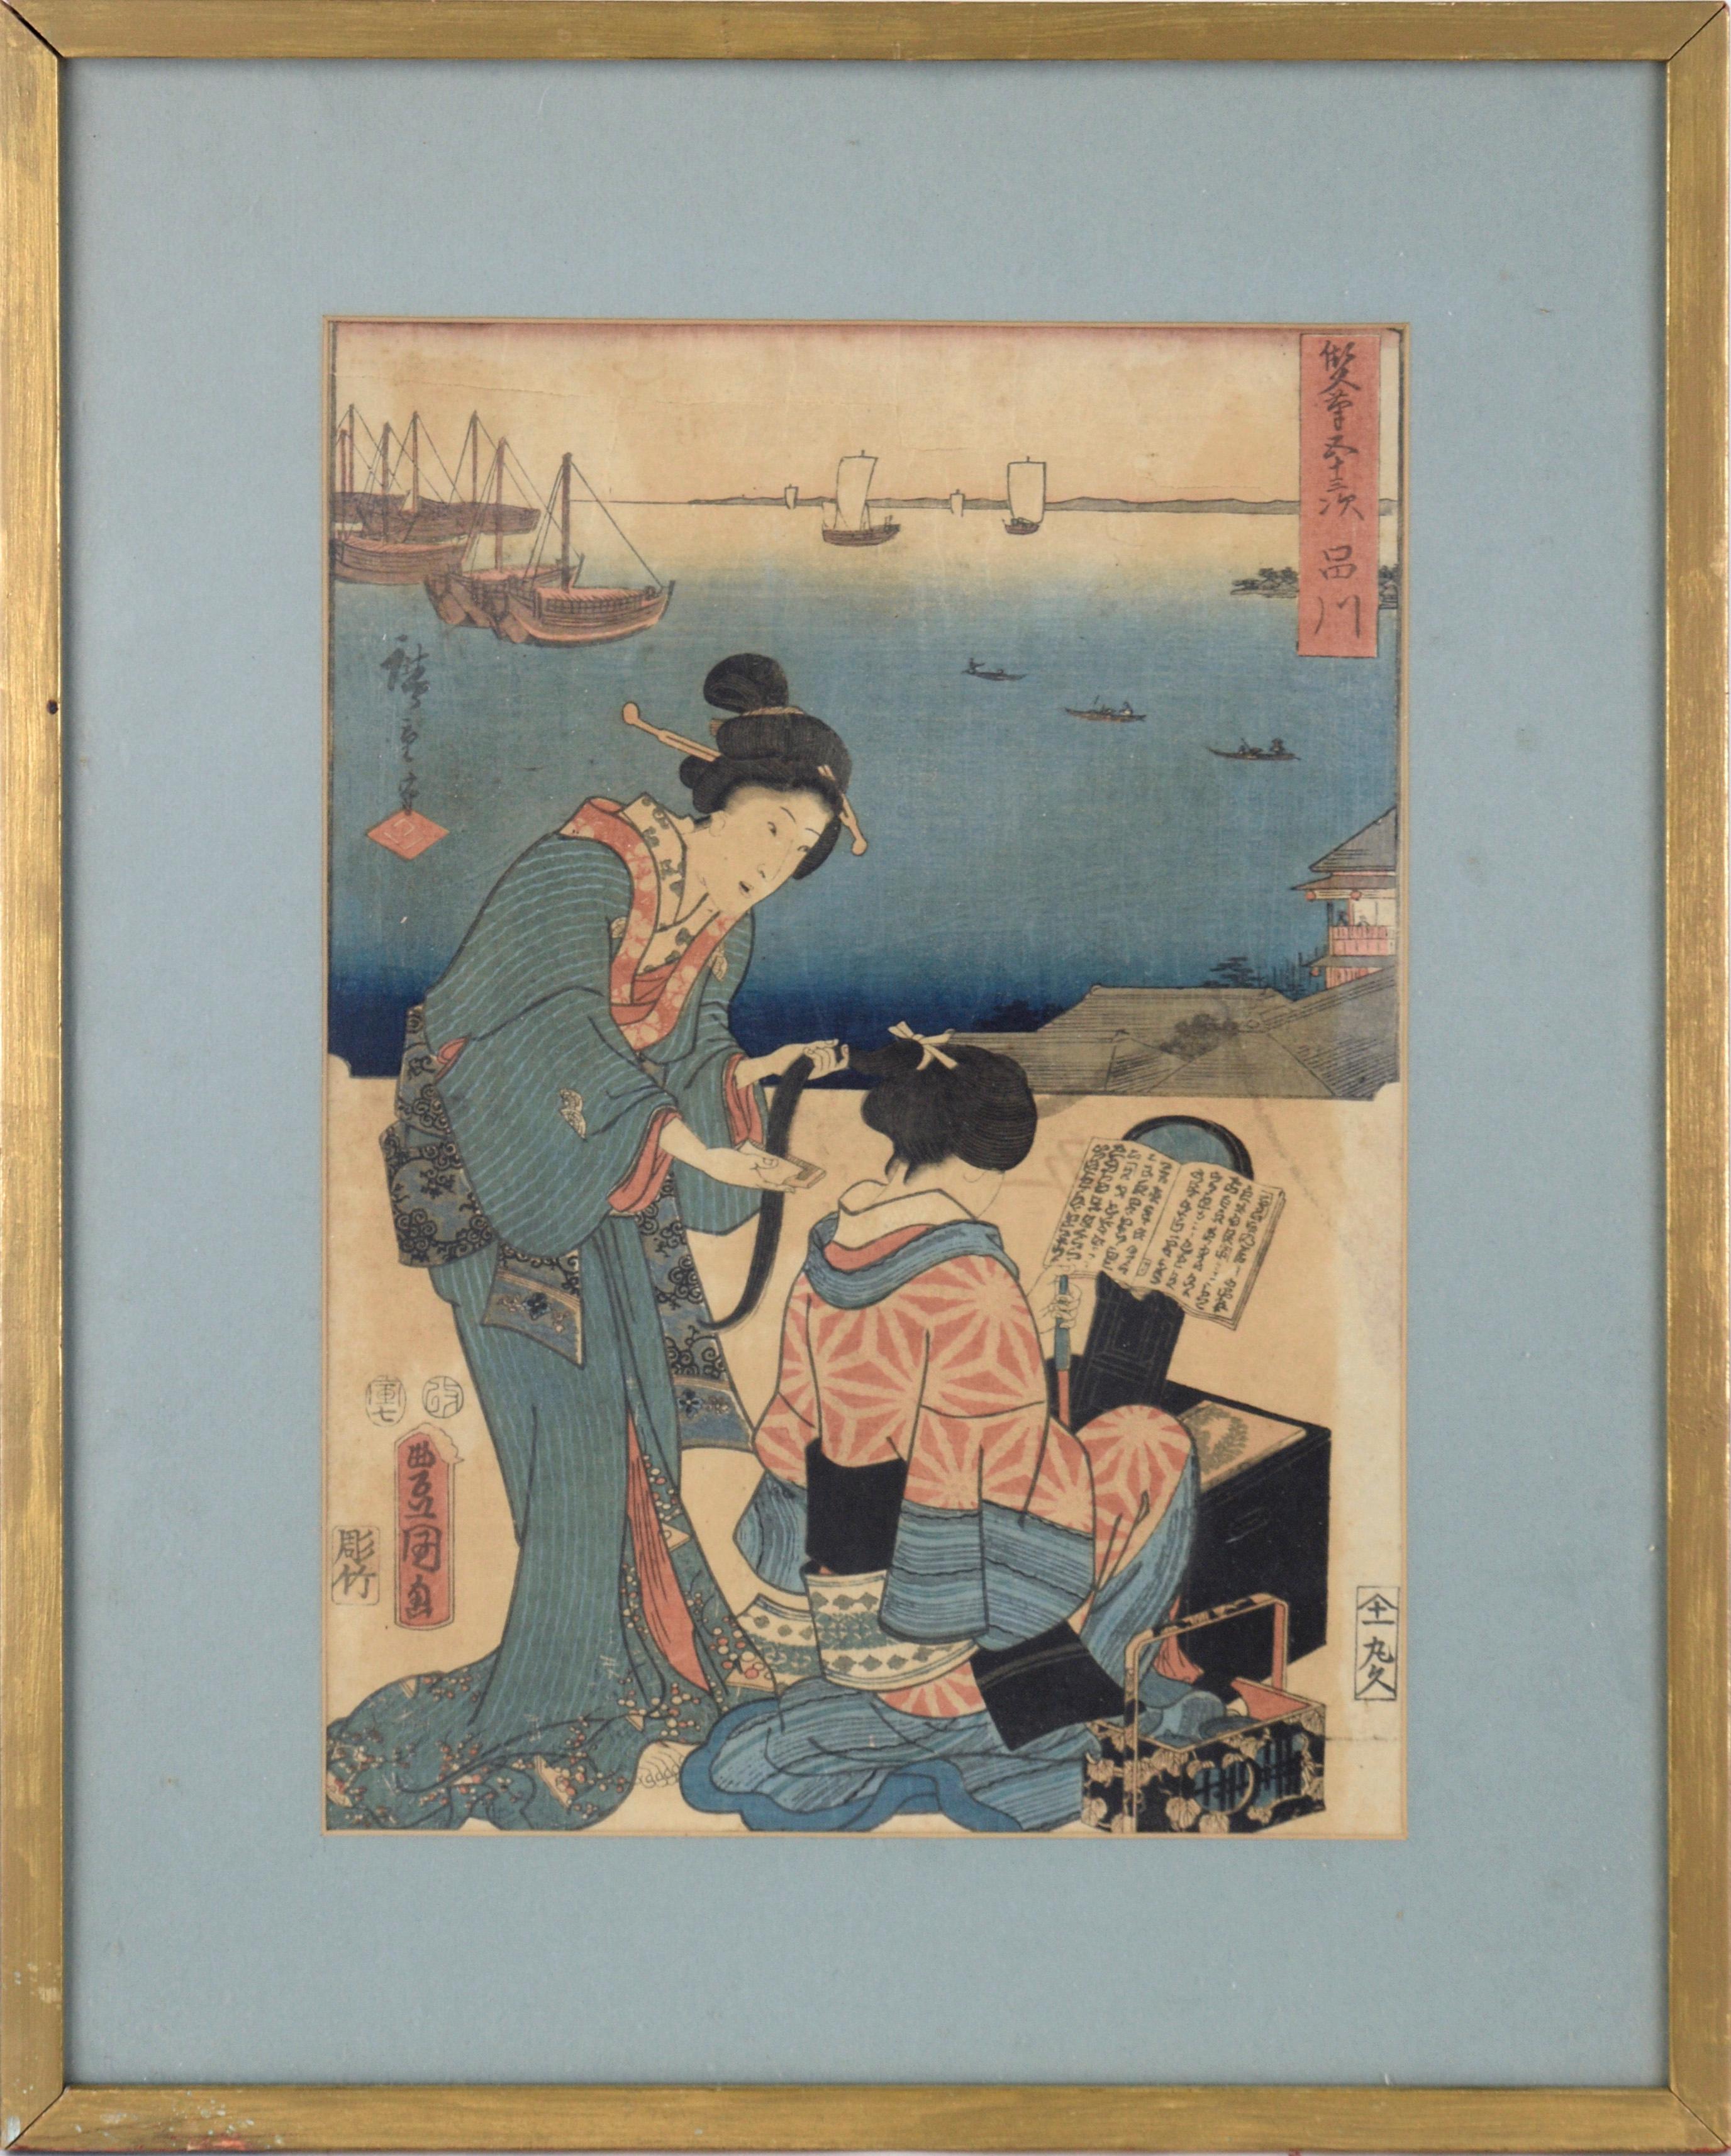 53 Stationen des Tokaido-Schminkzimmers – Holzschnitt von Utagawa Hiroshige und Kunisada